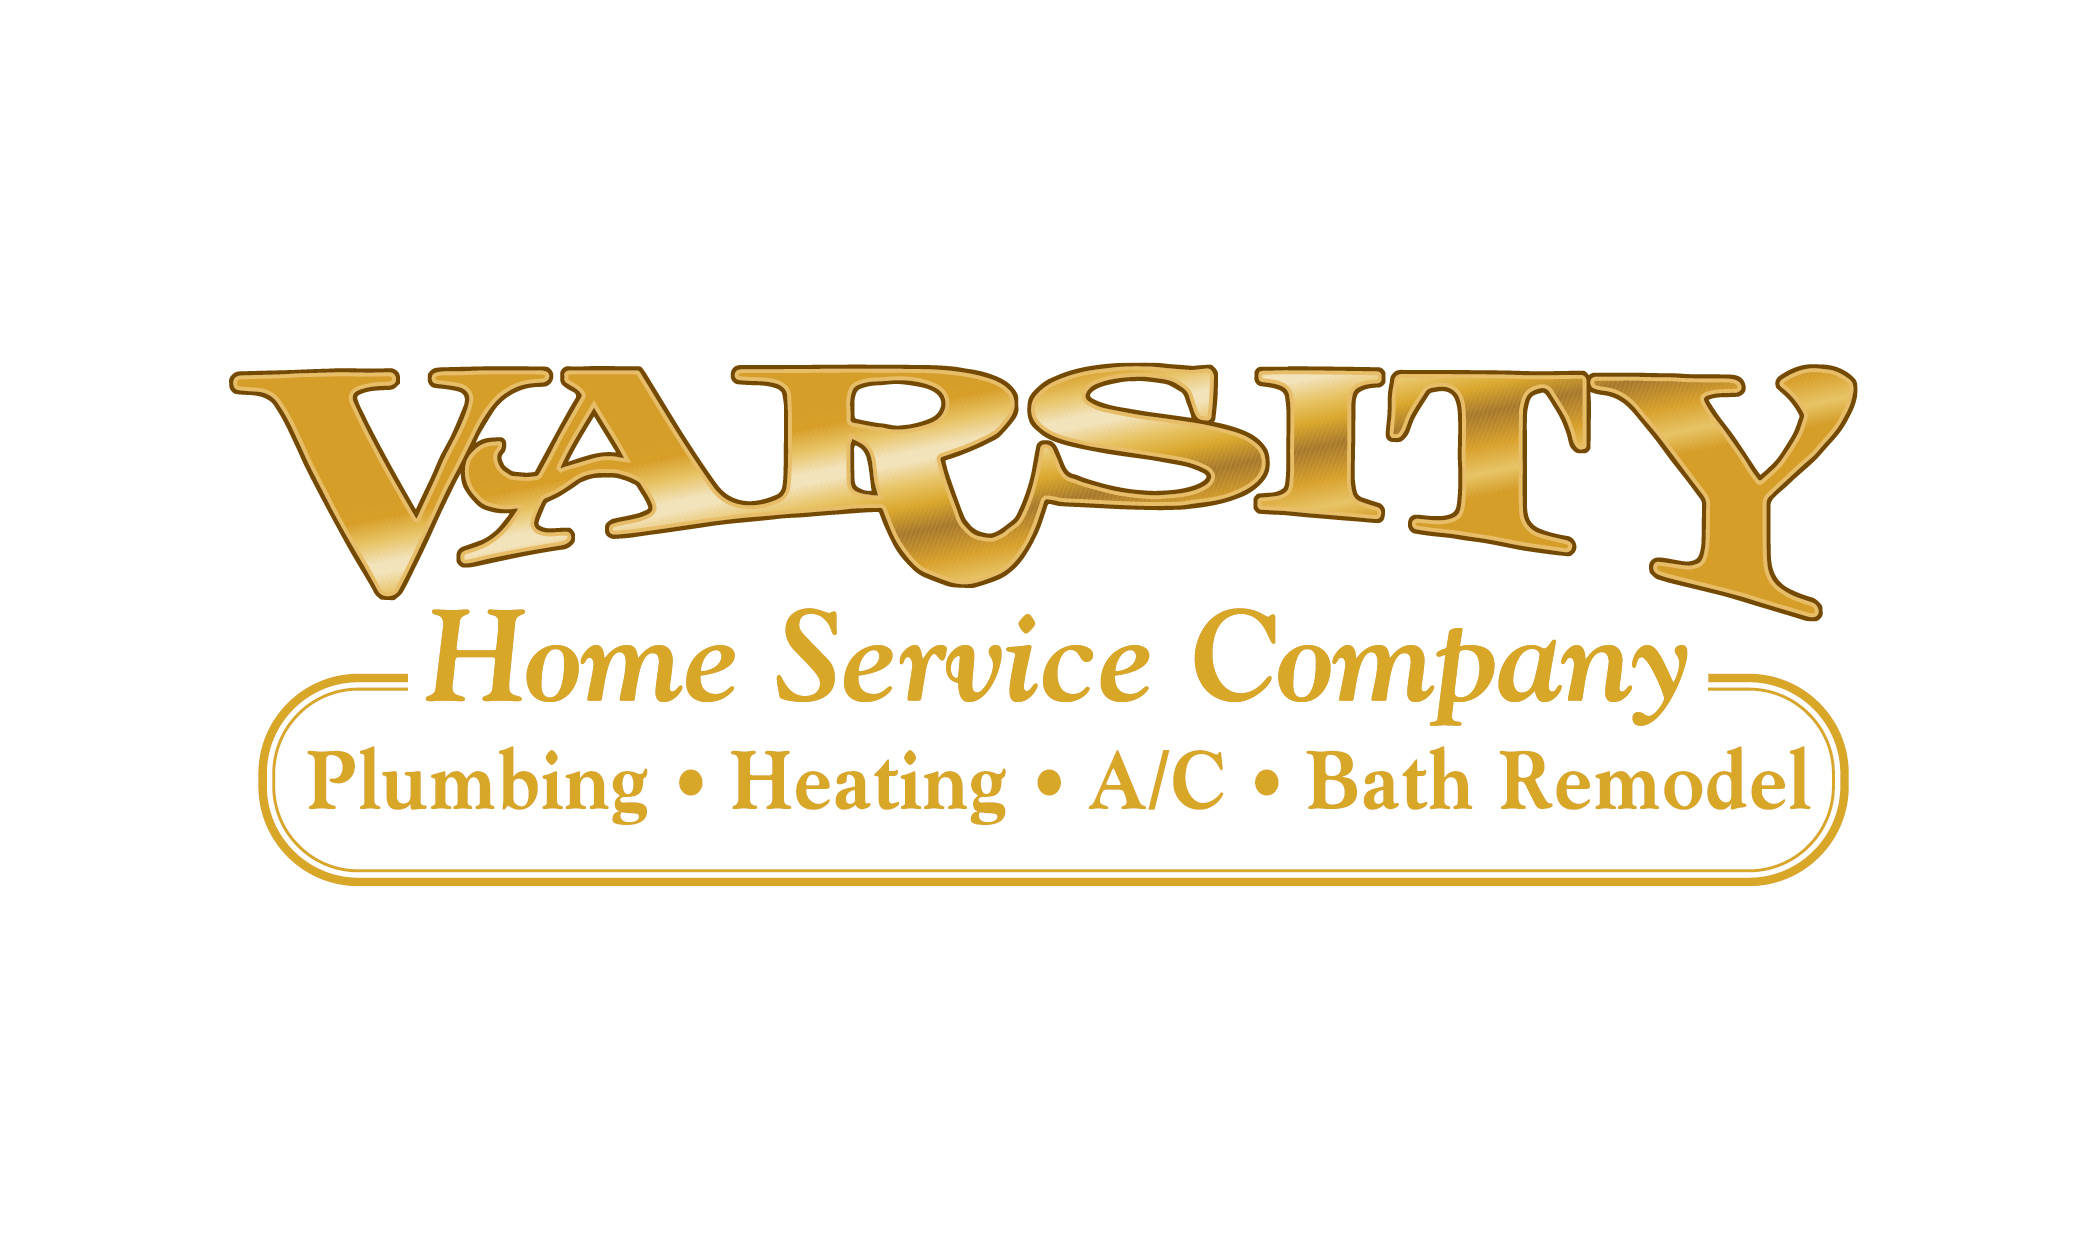 Varsity Home Service Company, Inc. Logo